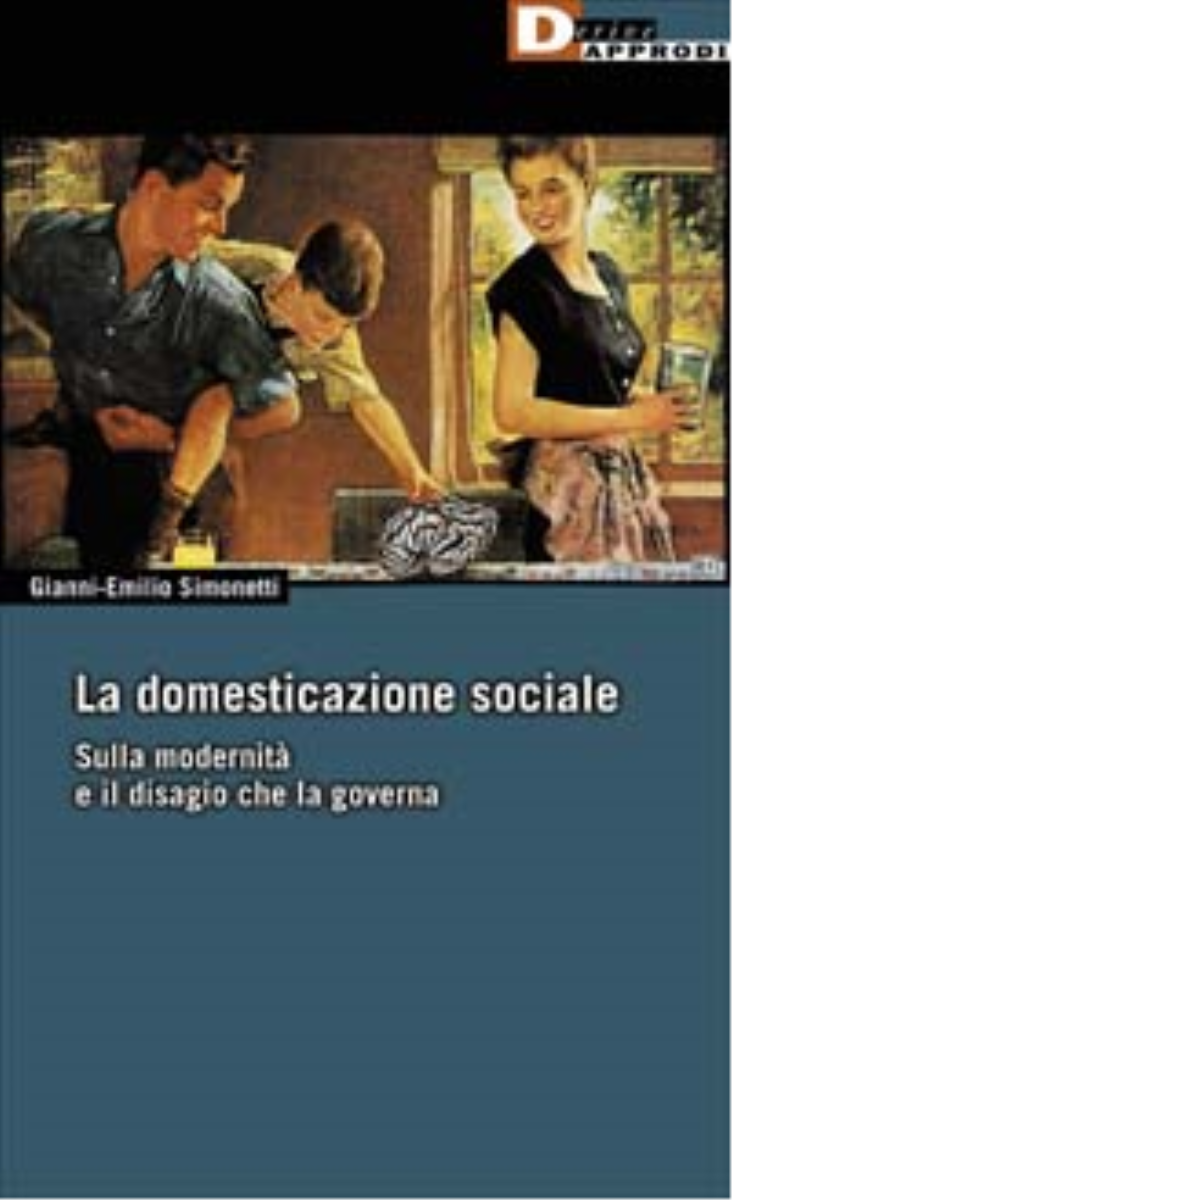 LA DOMESTICAZIONE SOCIALE. di GIANNI-EMILIO SIMONETTI - DeriveApprodi,2003 libro usato